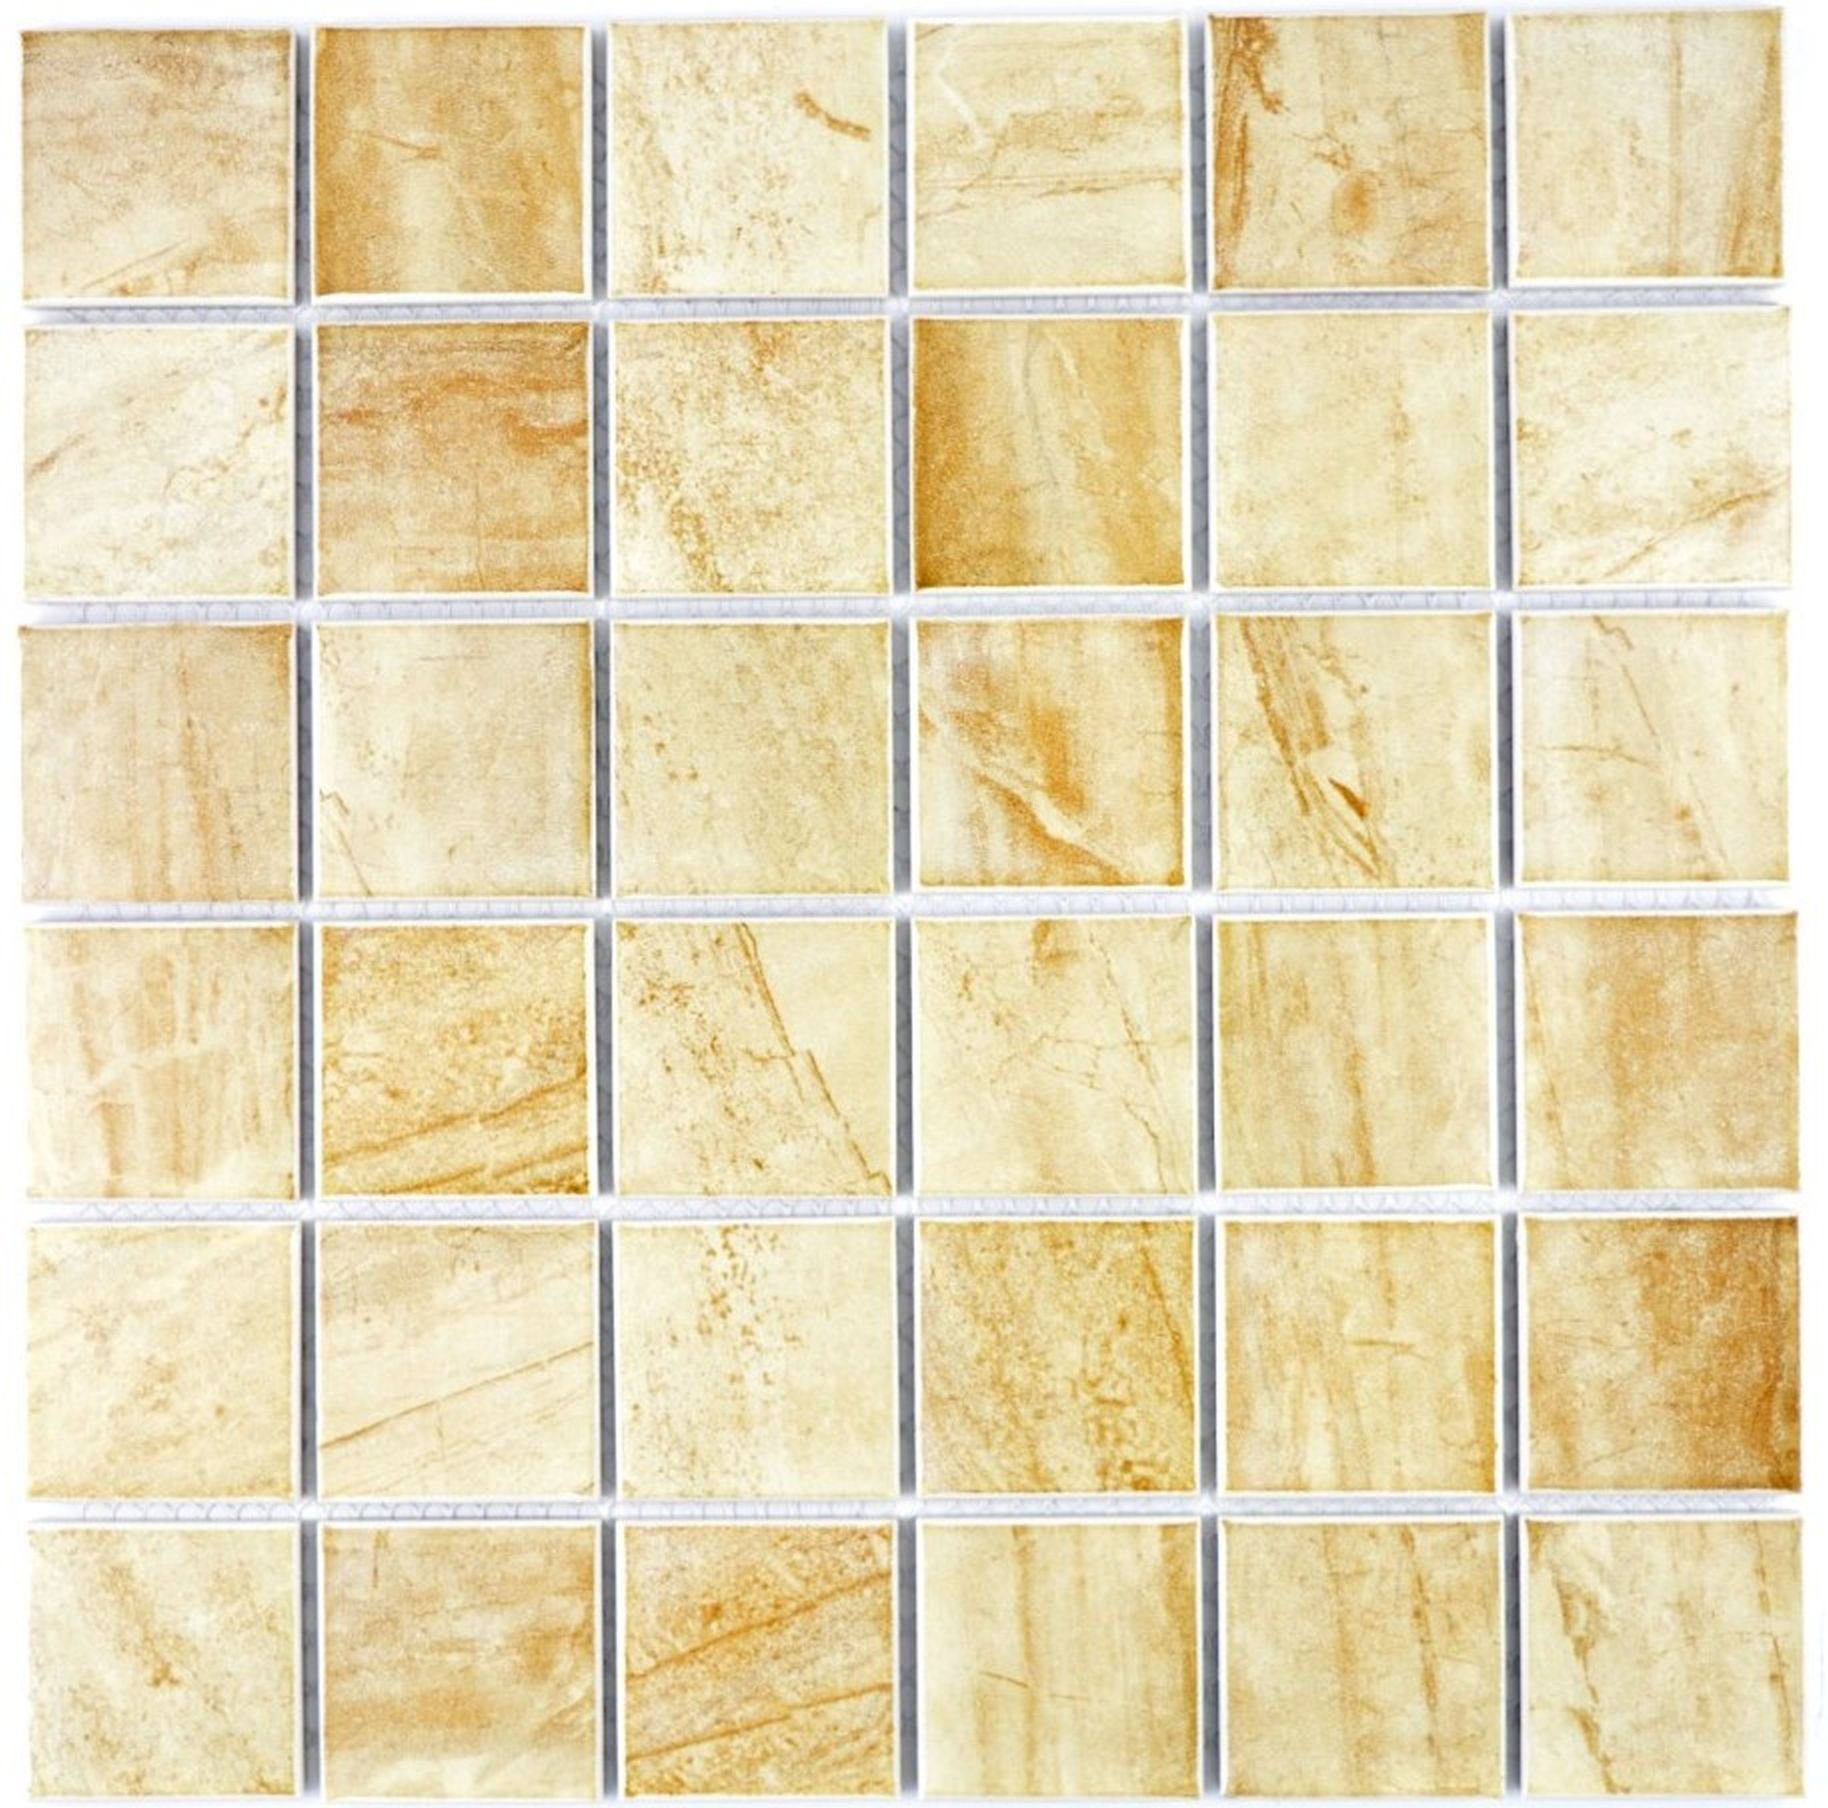 Mosani Fliese Mosaik Natursteinoptik Mosaikfliesen beige Keramik Struktur Travertin gelb